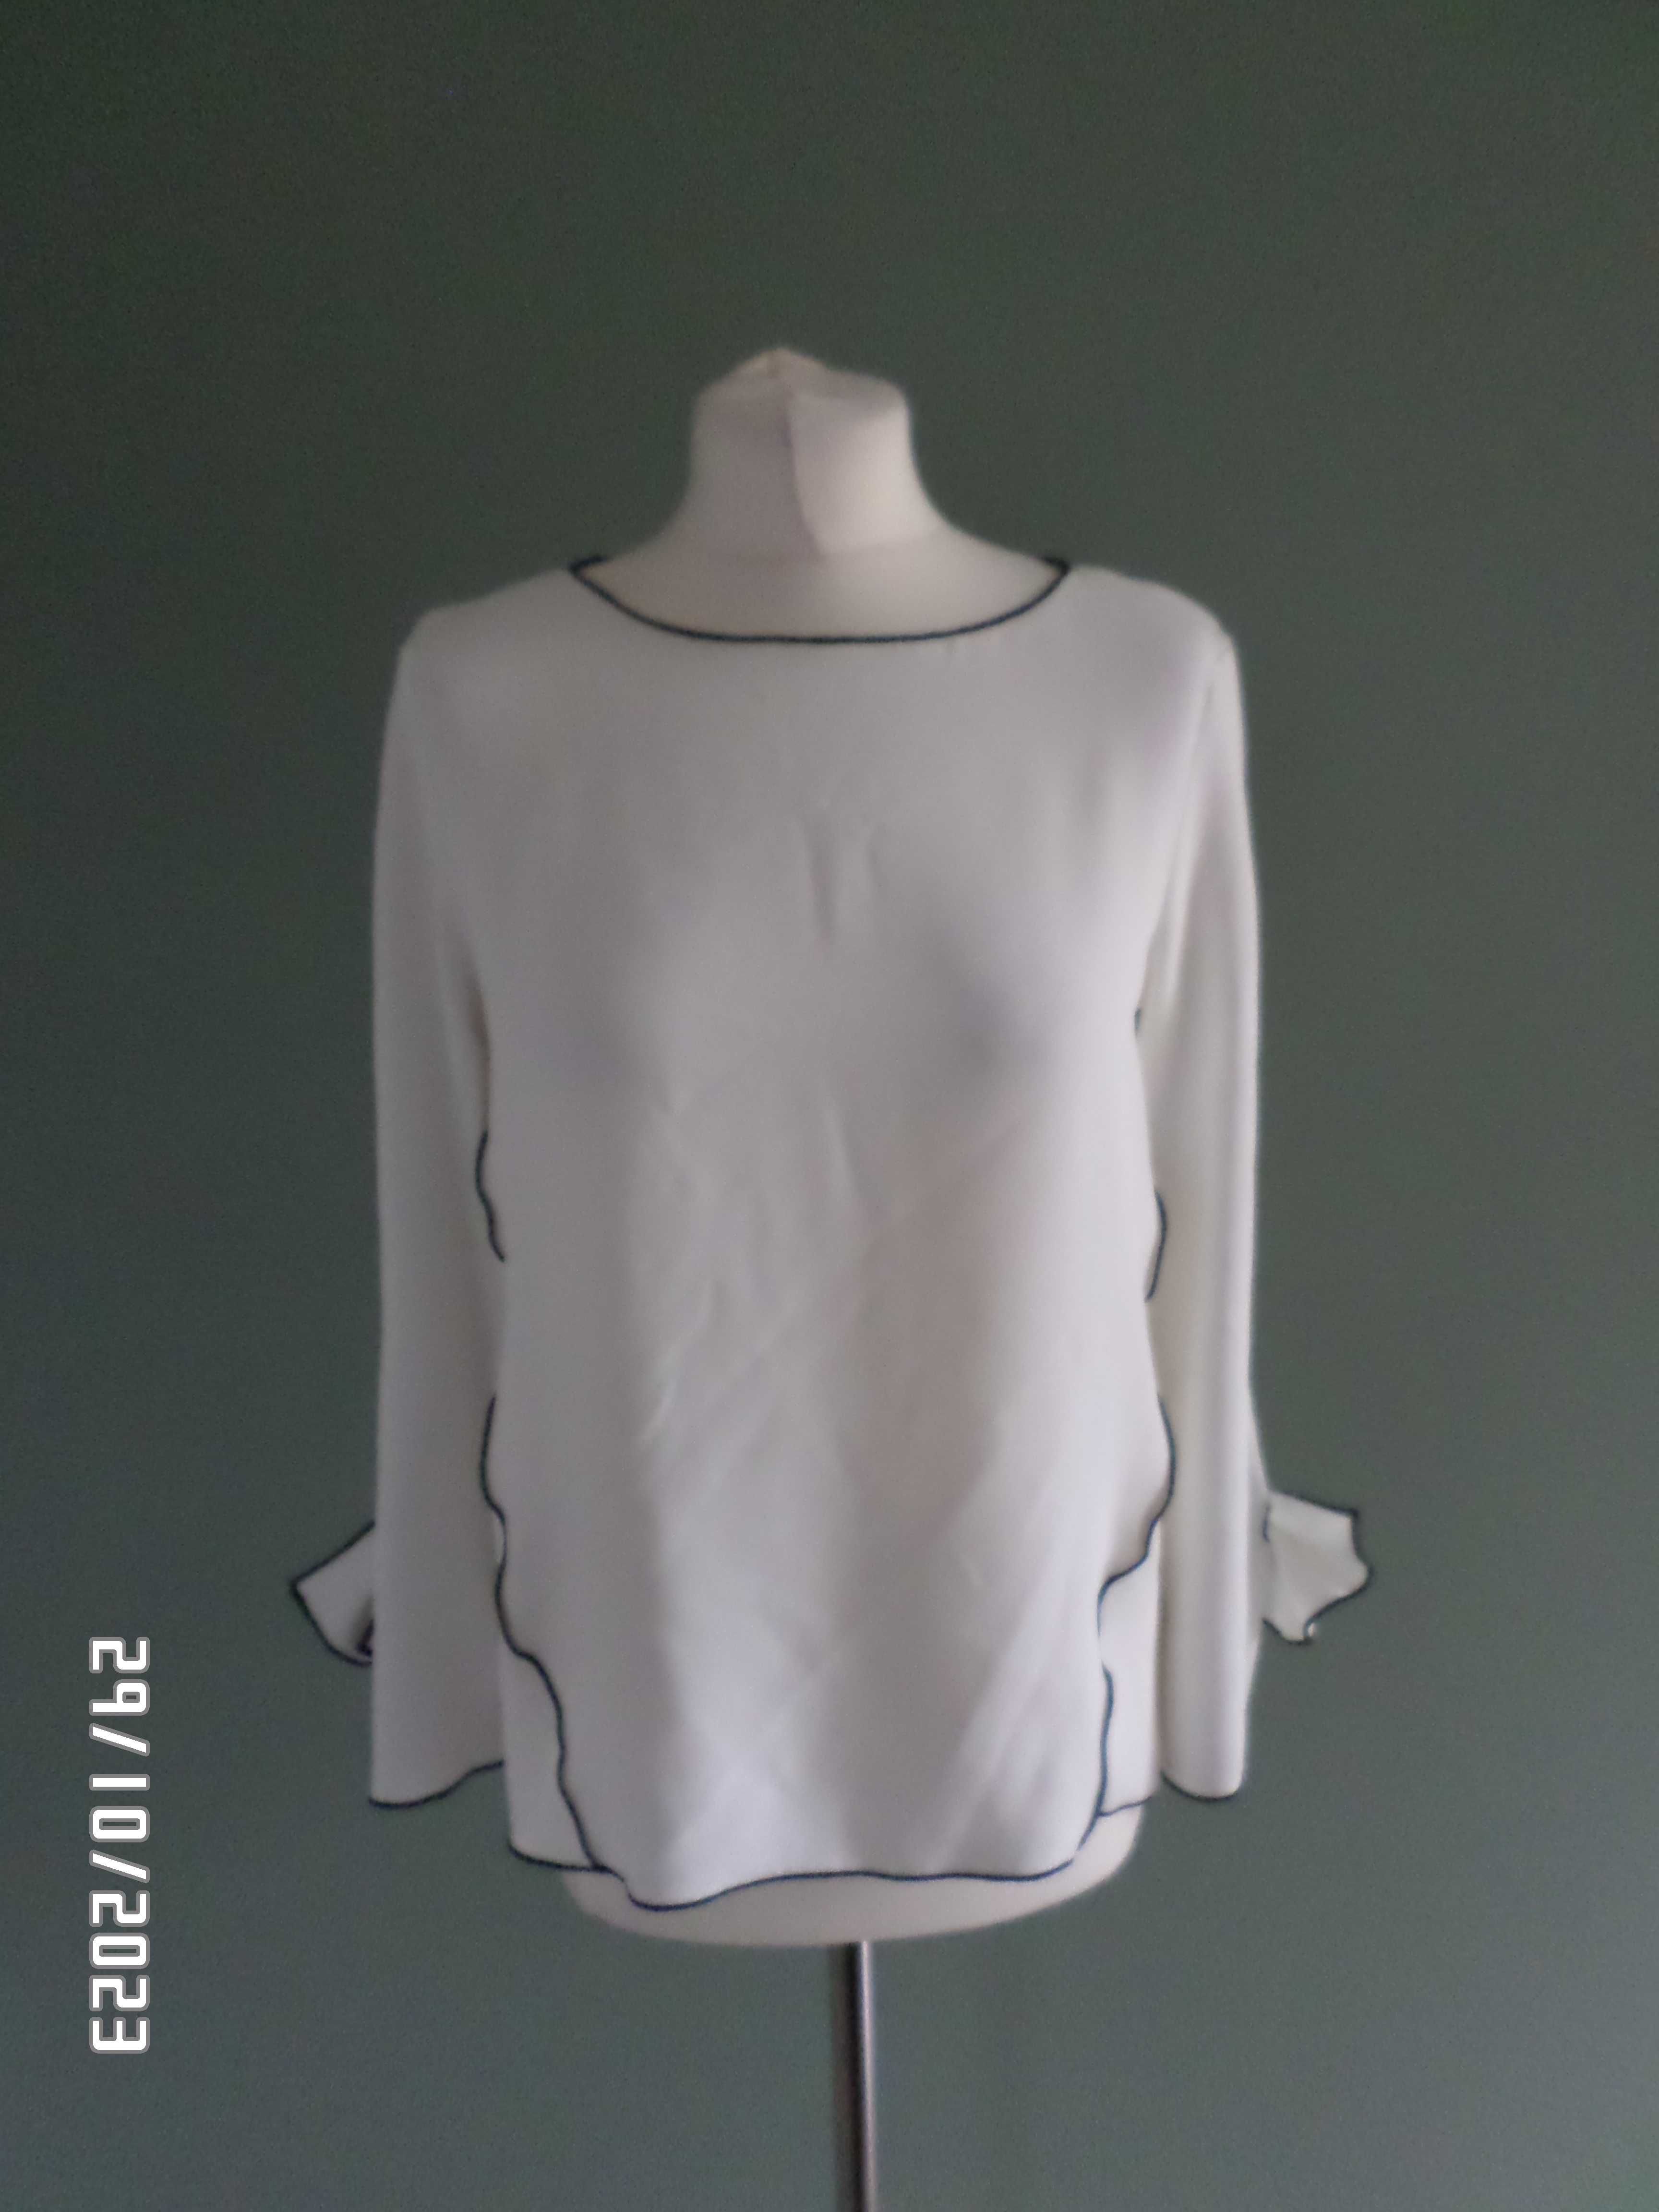 śliczna firmowa  bluzka damska-Zara-38-s/m